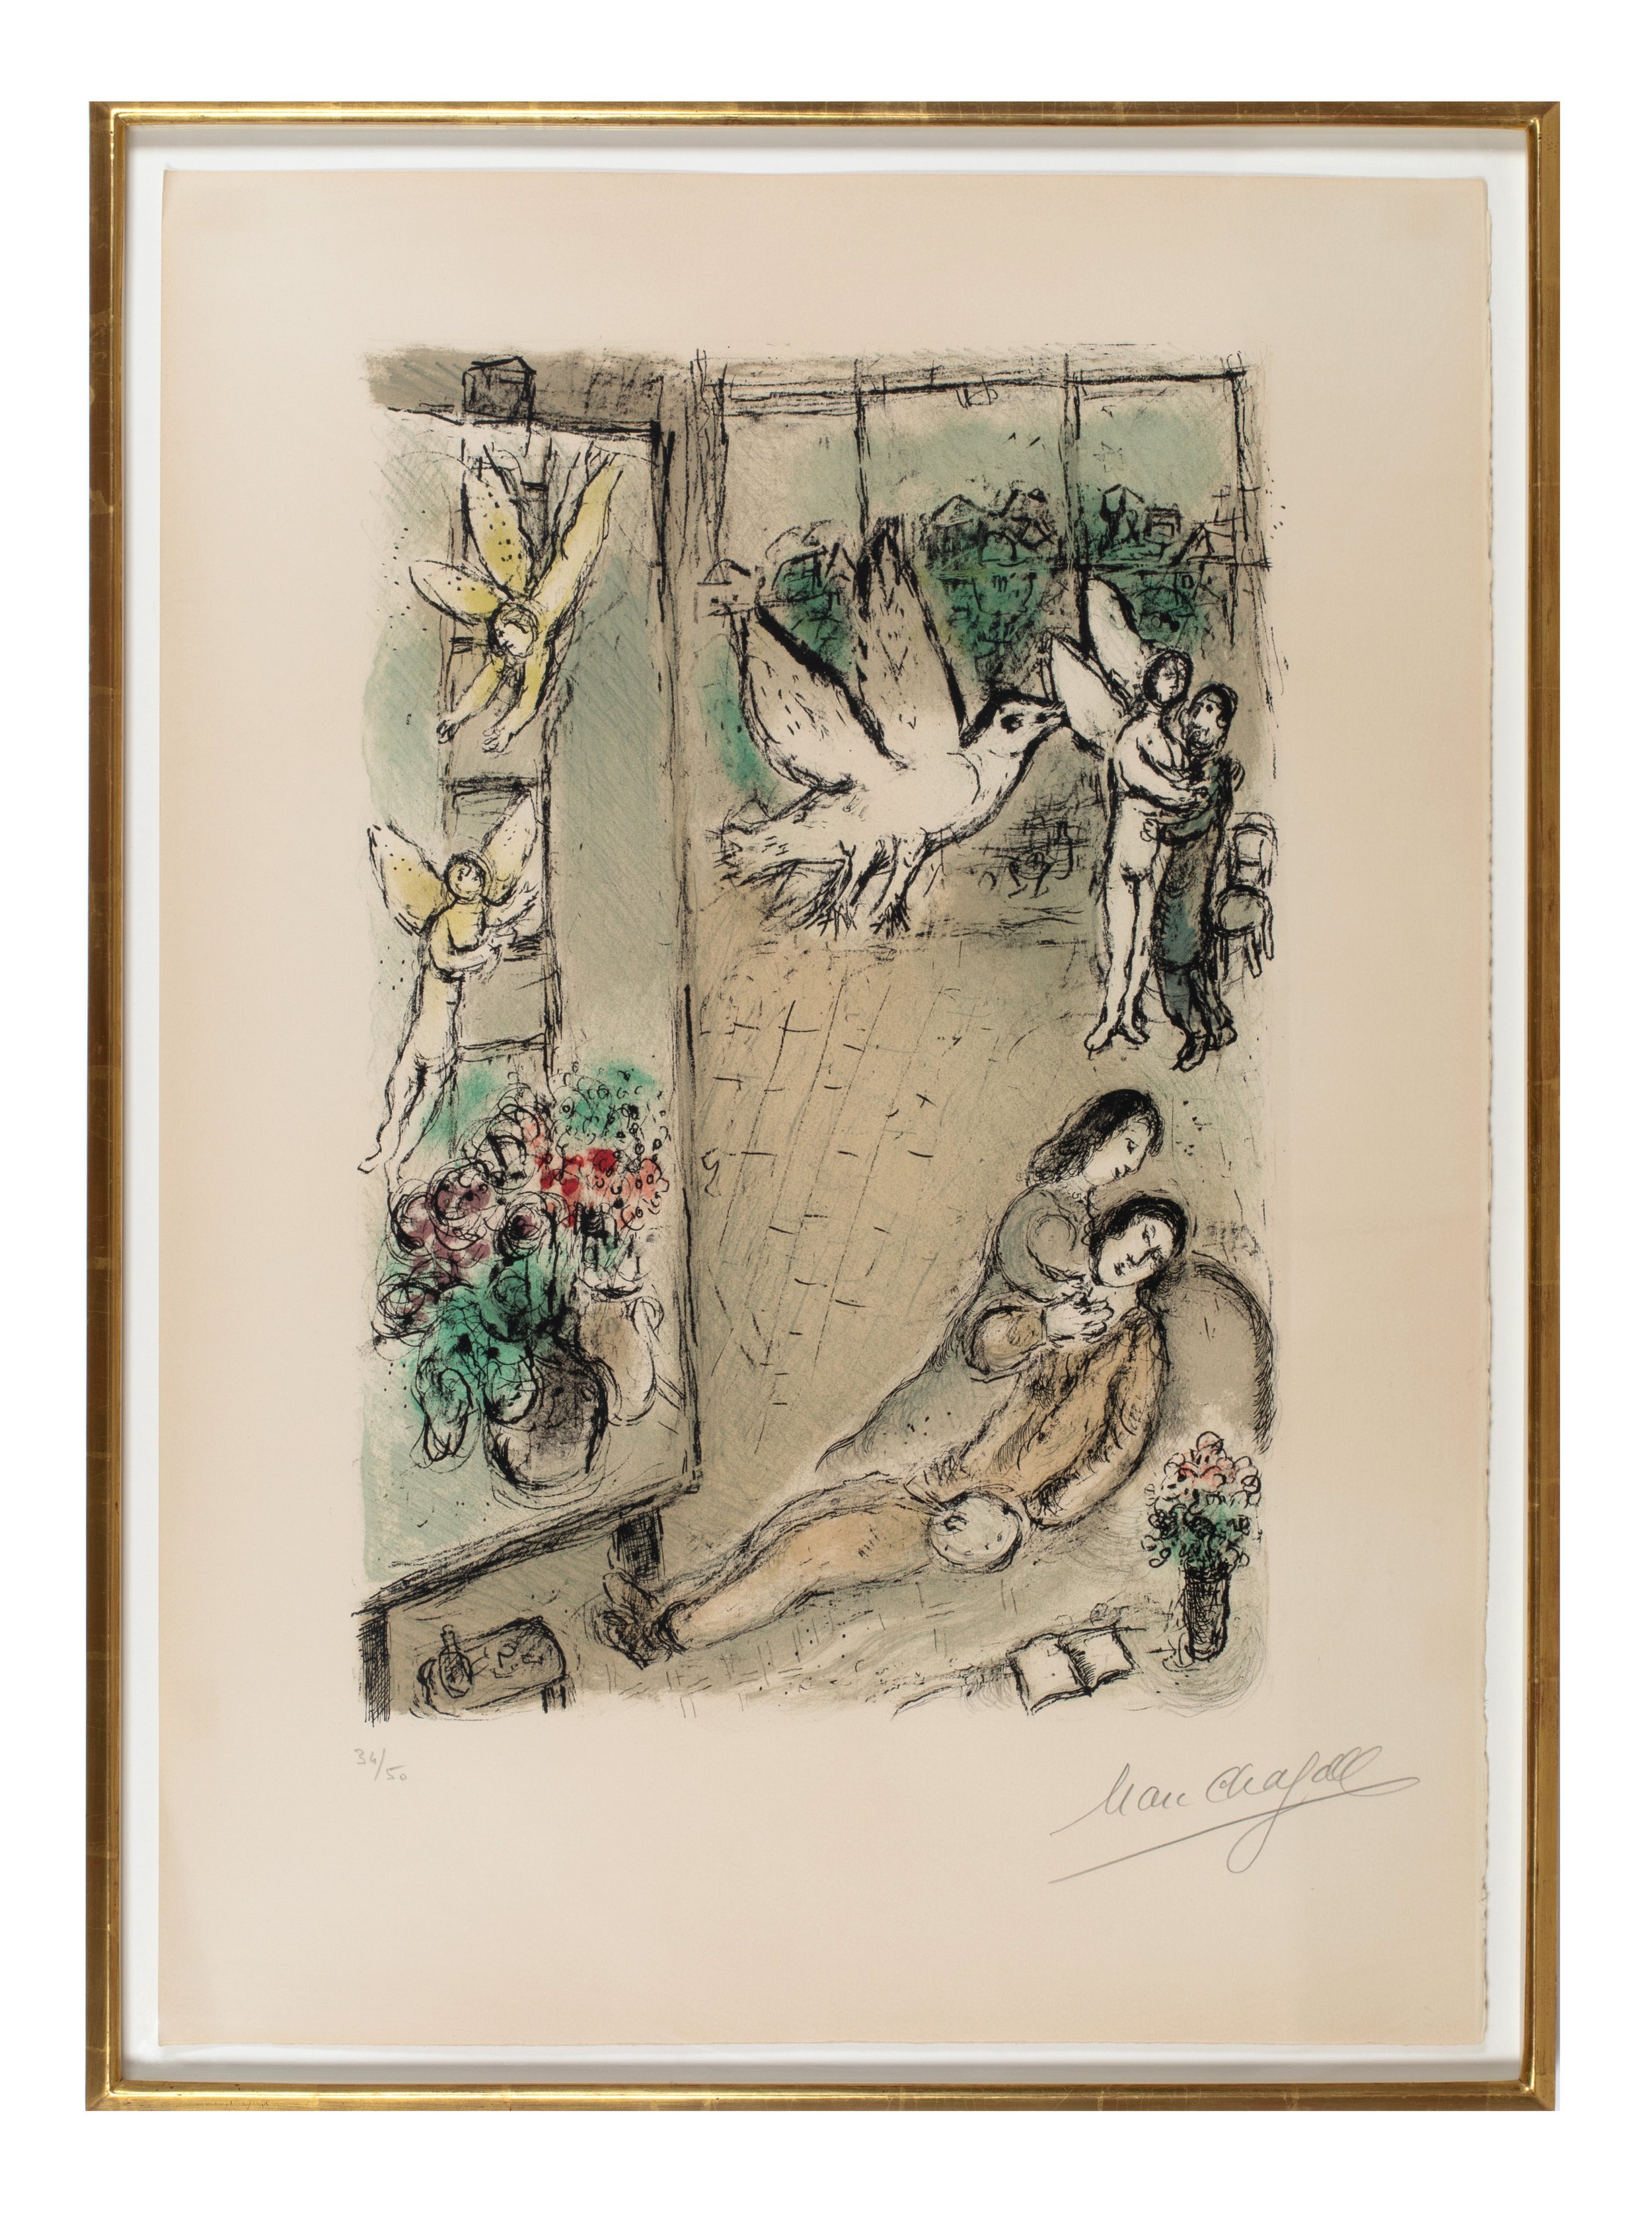 Chagall-2.jpg